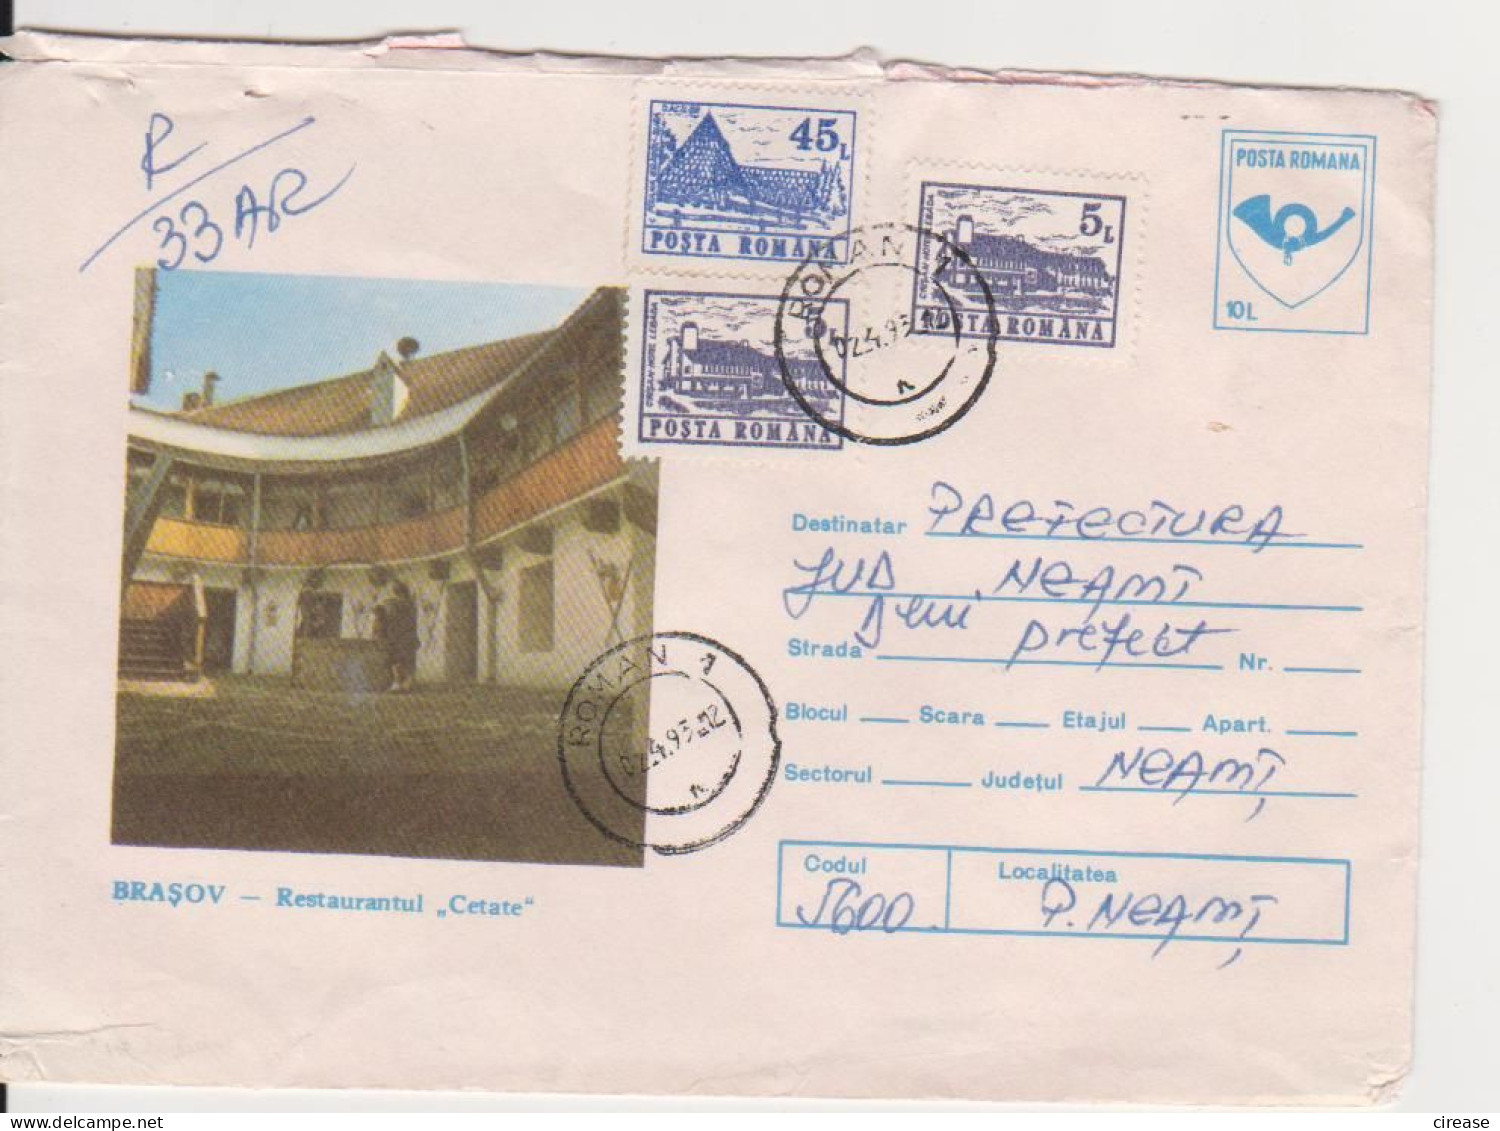 BRASOV RESTAURANT  ROMANIA POSTAL STATIONERY 1992 - Alimentation